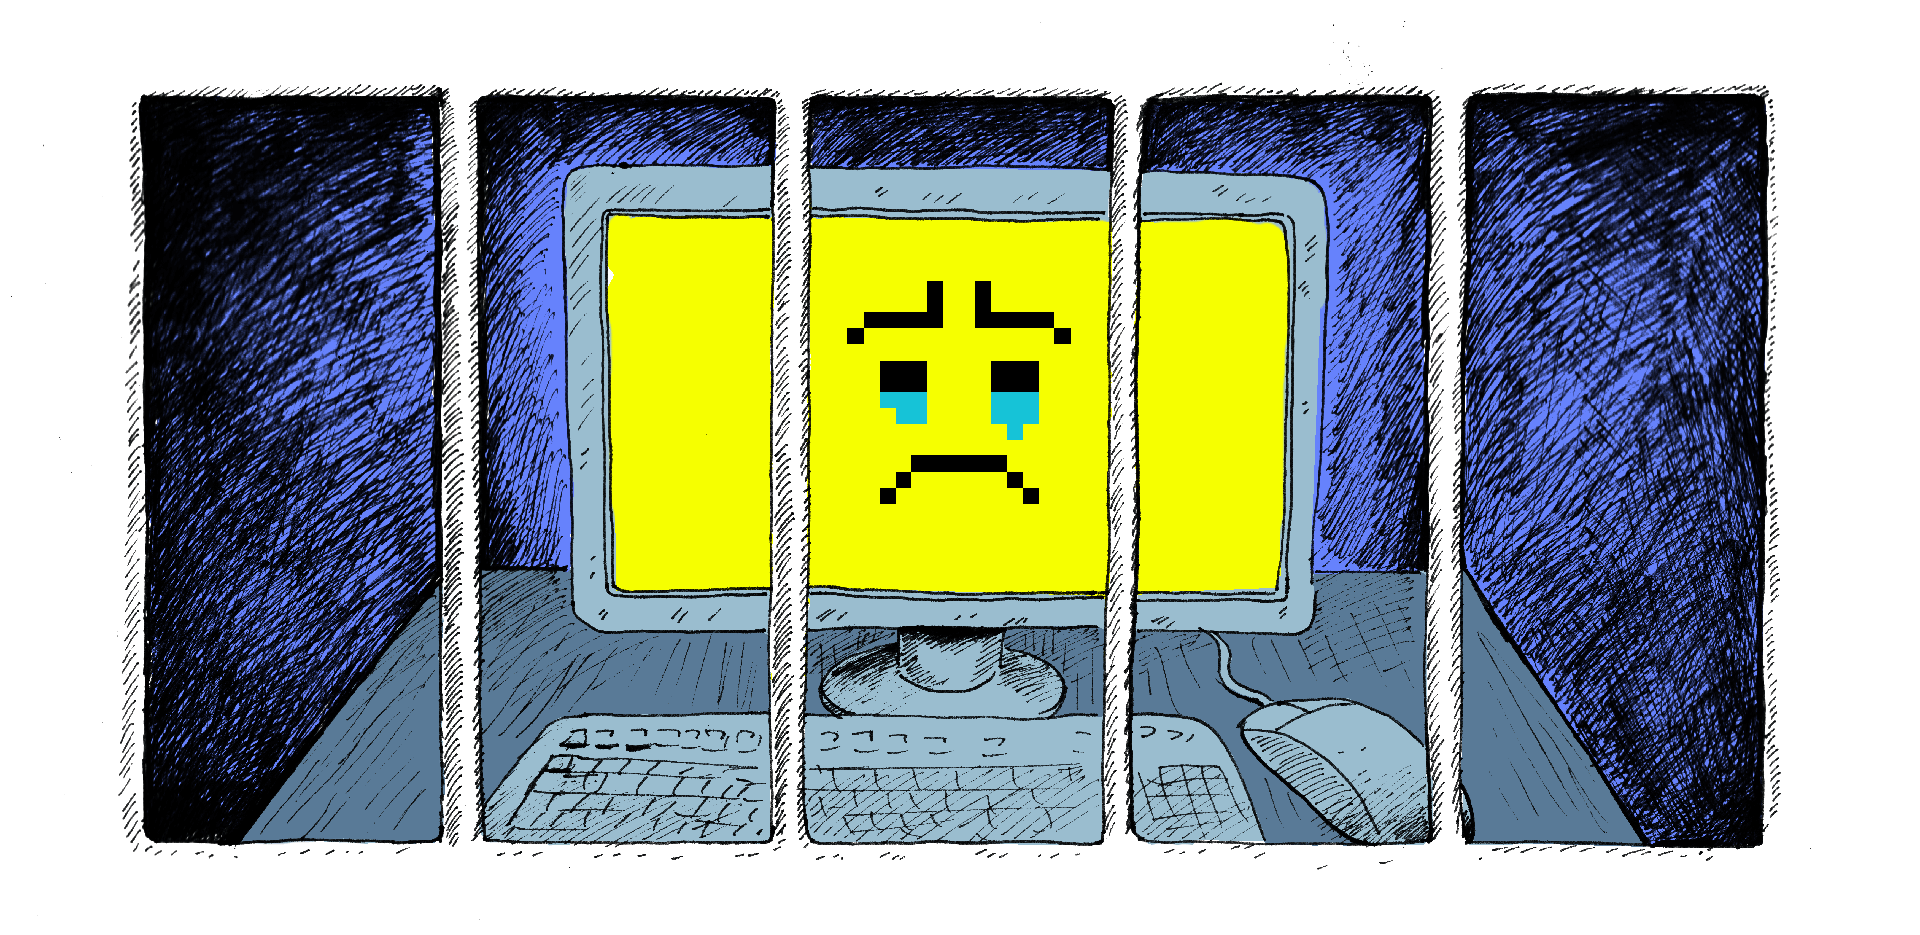 Computer achter de tralies met een verdrietige smiley op het scherm